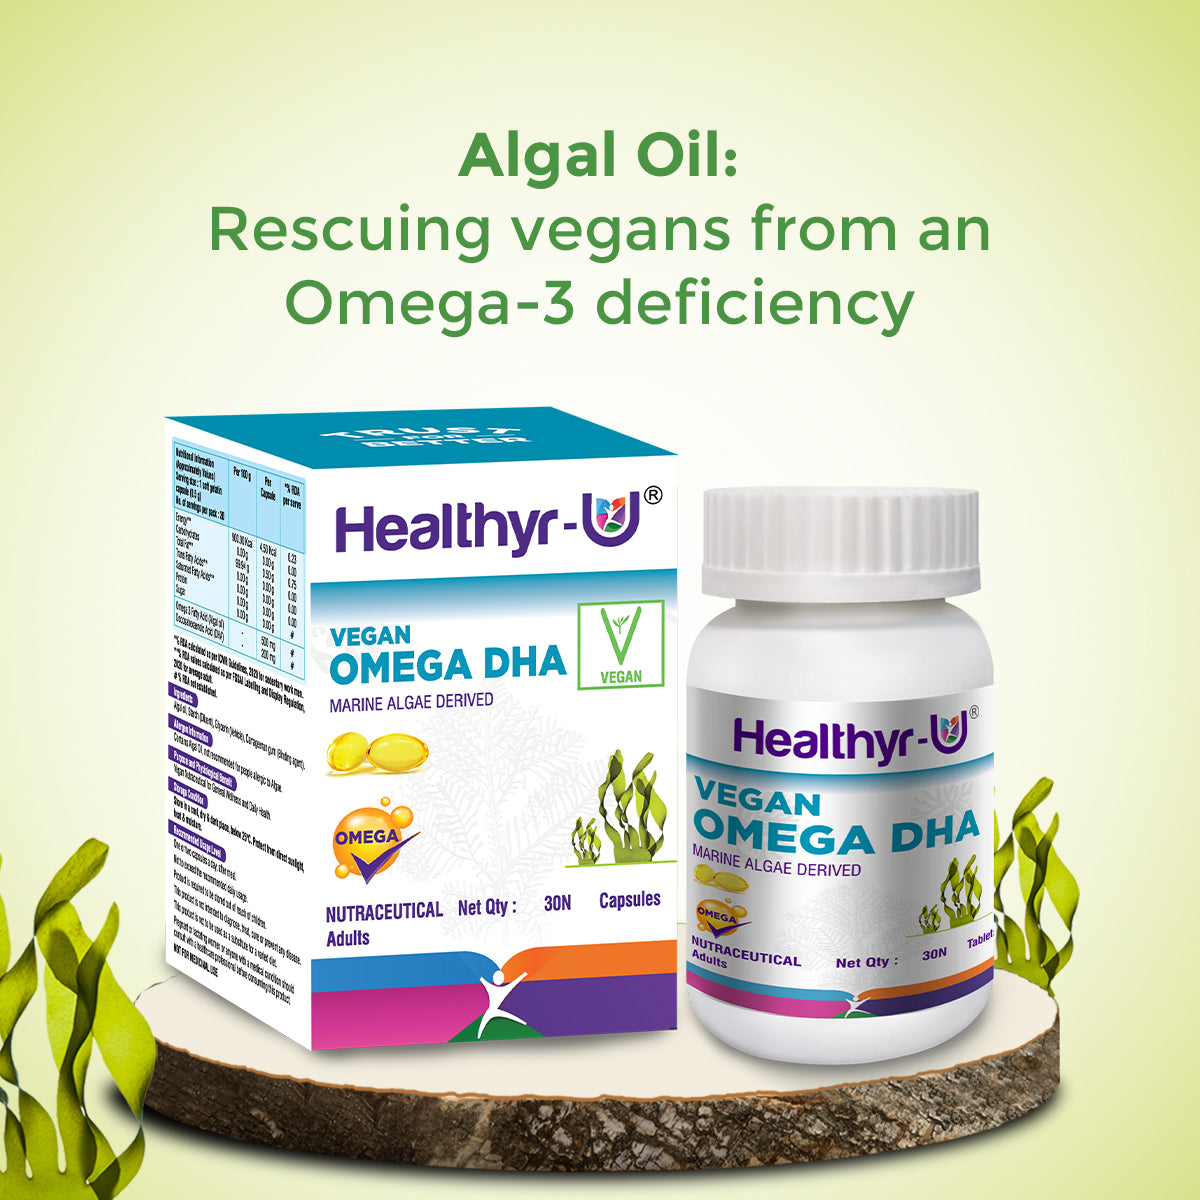 Vegan-Omega-DHA-Healthyr-U-Algal-Oil